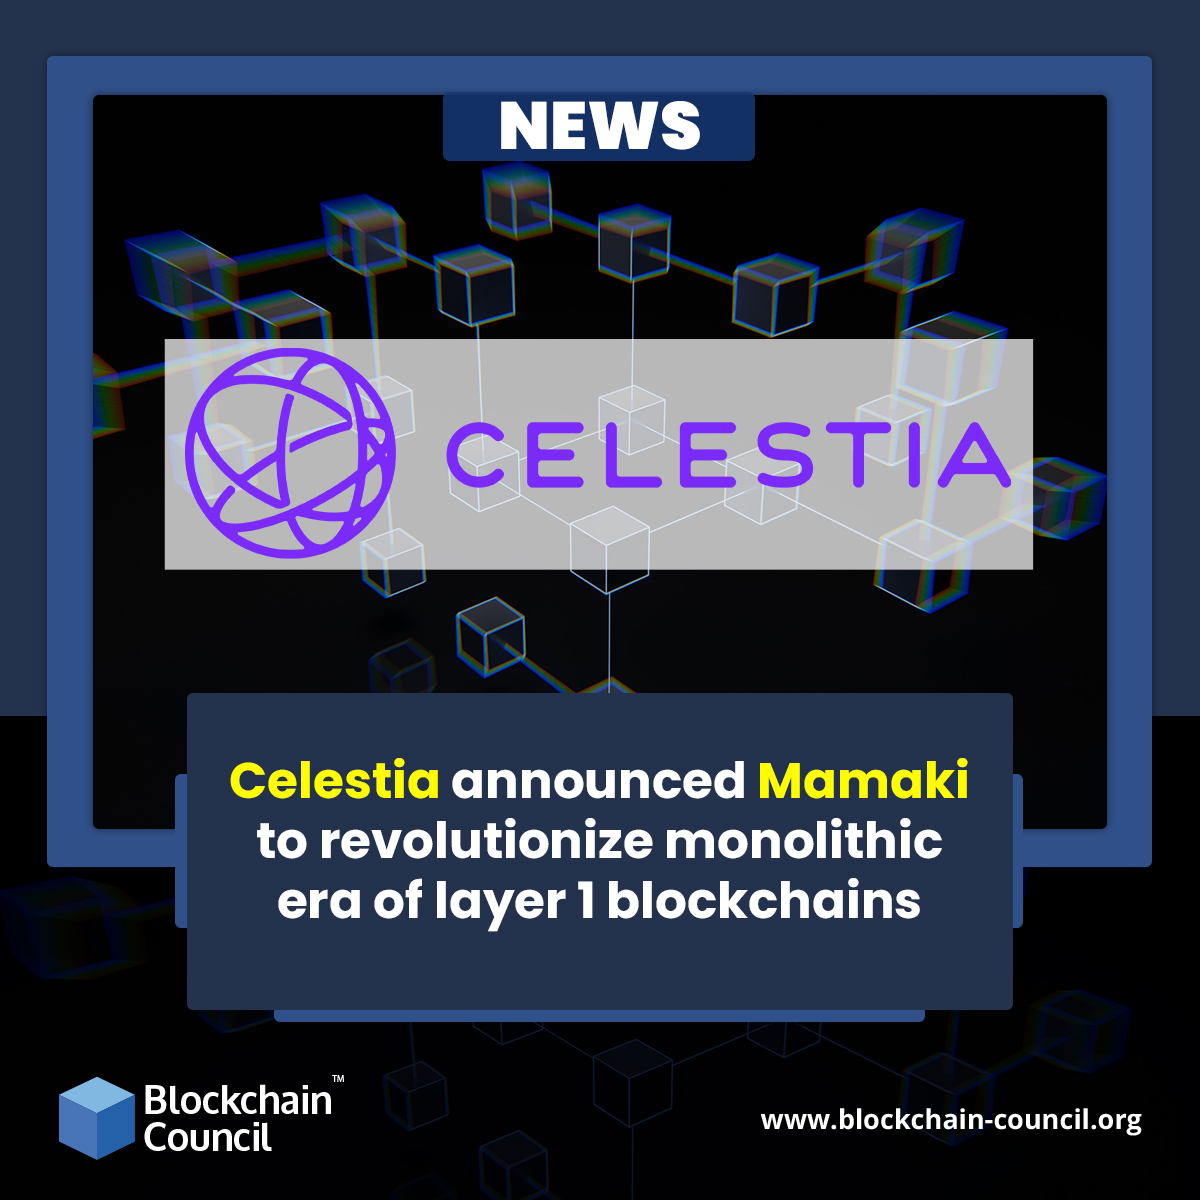 Celestia ha annunciato che Mamaki rivoluzionerà l'era monolitica delle blockchain di livello 1